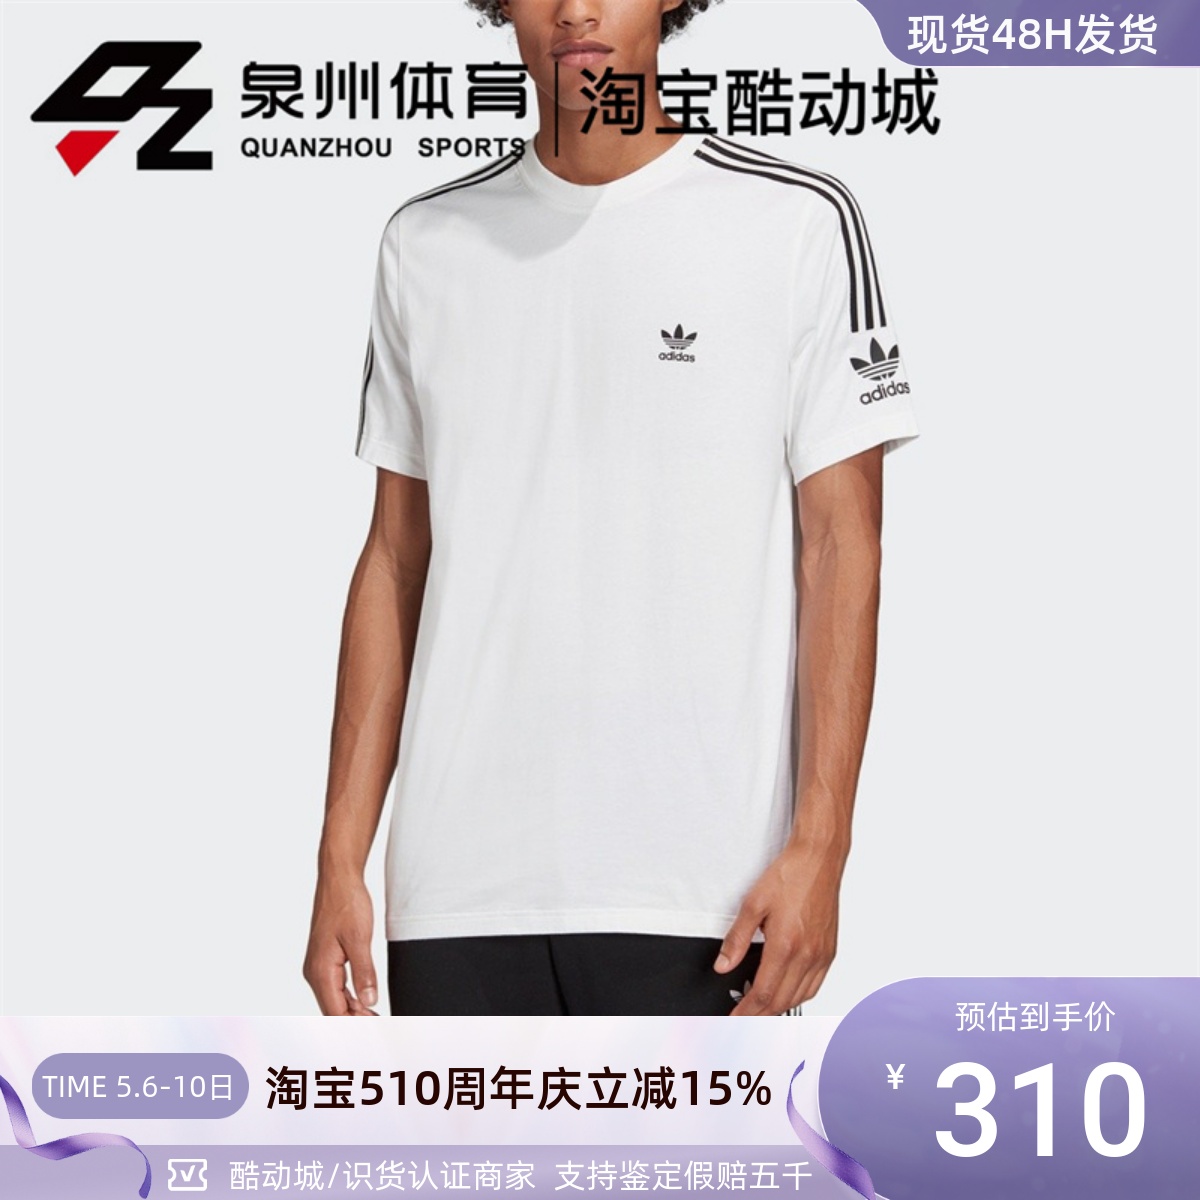 Adidas/阿迪达斯 Original 男子 TECH TEE休闲运动短袖T恤 FT8752